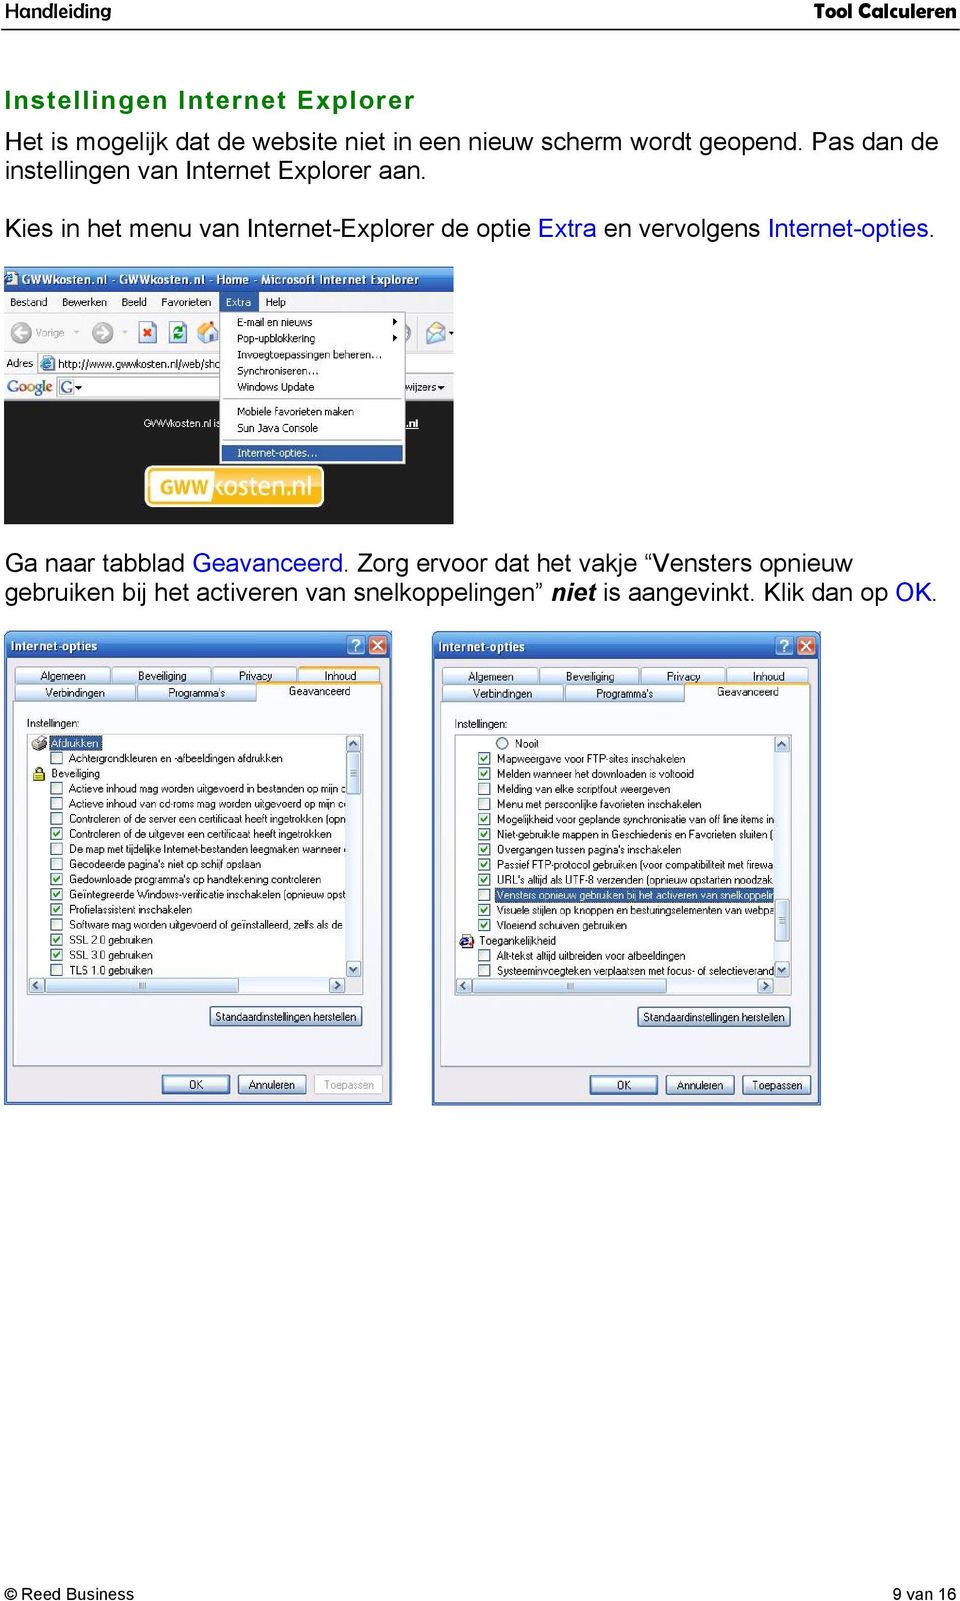 Kies in het menu van Internet-Explorer de optie Extra en vervolgens Internet-opties.